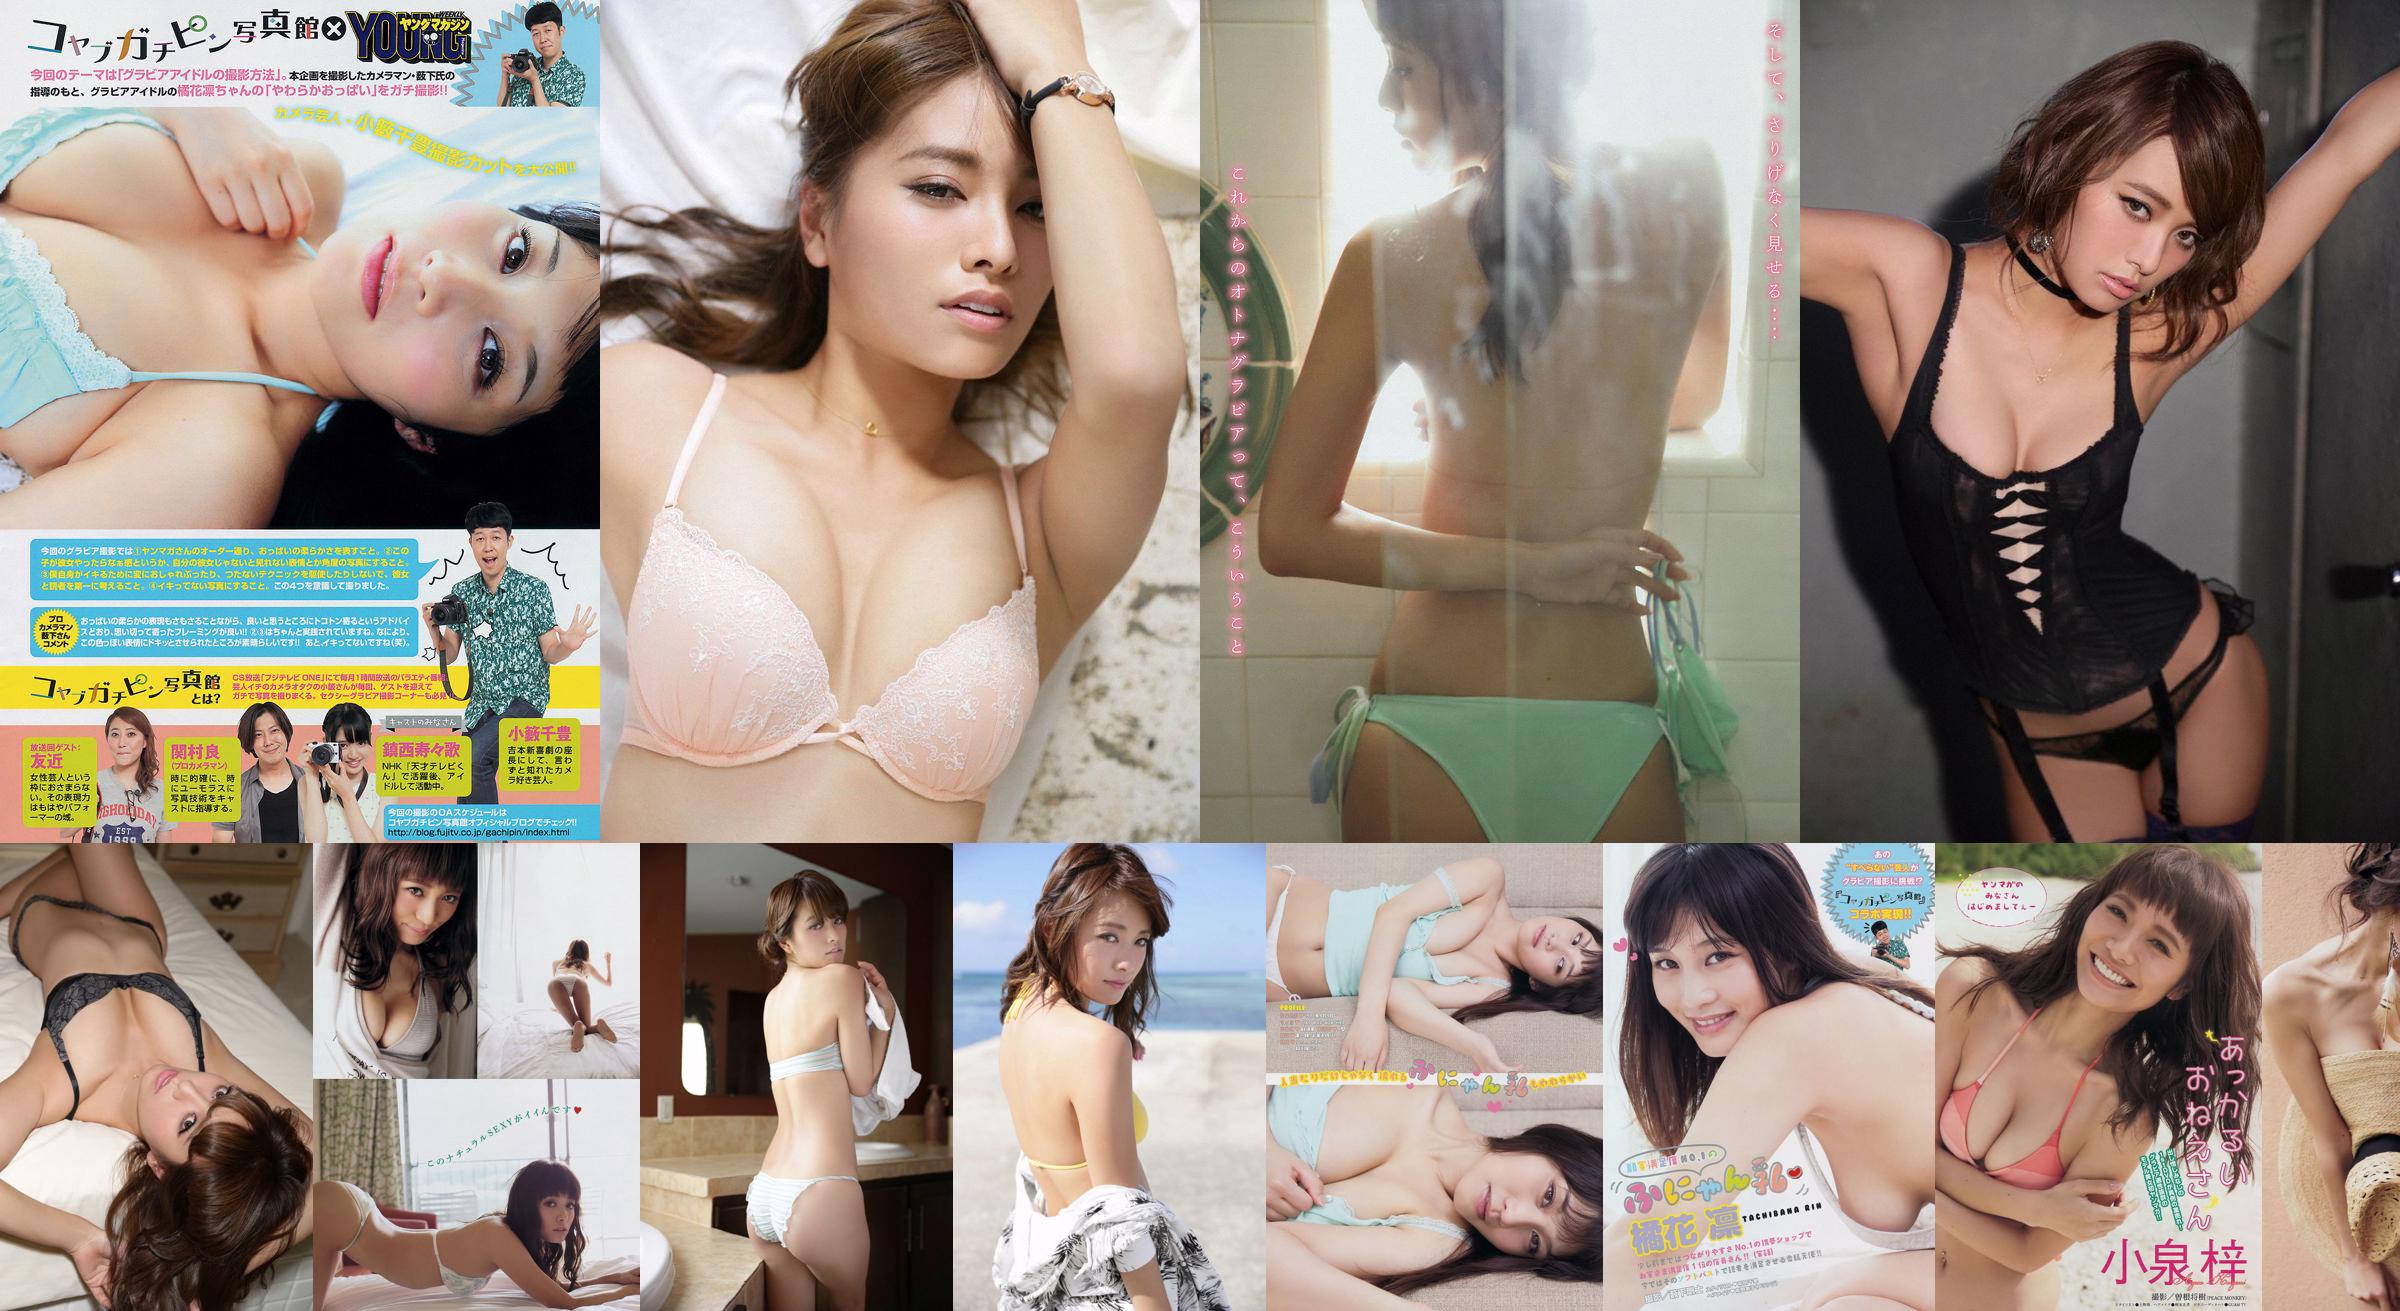 [Young Magazine] Azusa Koizumi Tachibana Rin 2014 No.43 Photo Magazine No.e14435 Pagina 1